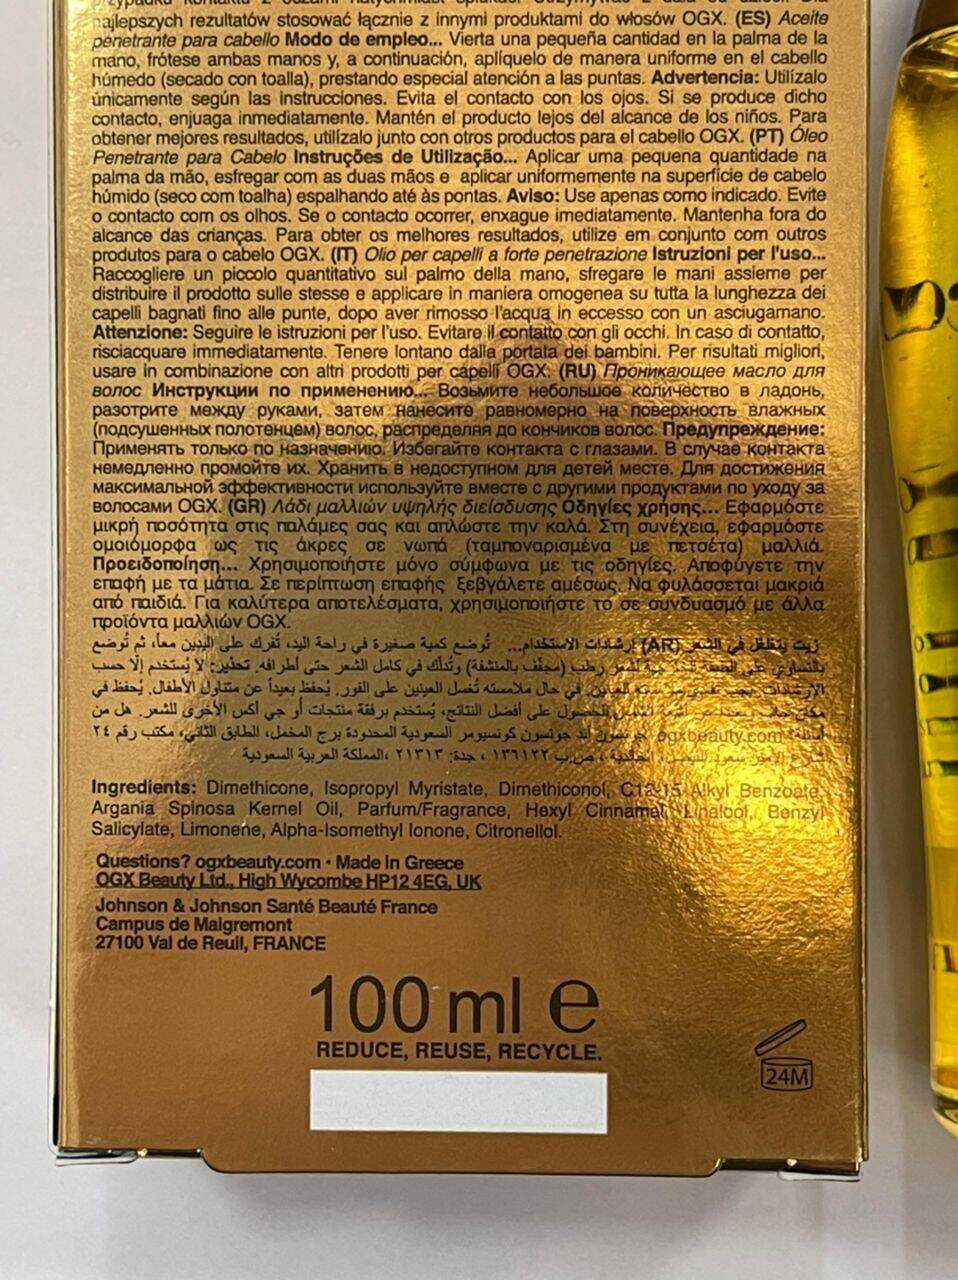 روغن آرگان موی خشک (اکسترا) اوجی ایکس OGX – ضد وز و موخوره و ترمیم قوی مو – 100 میل